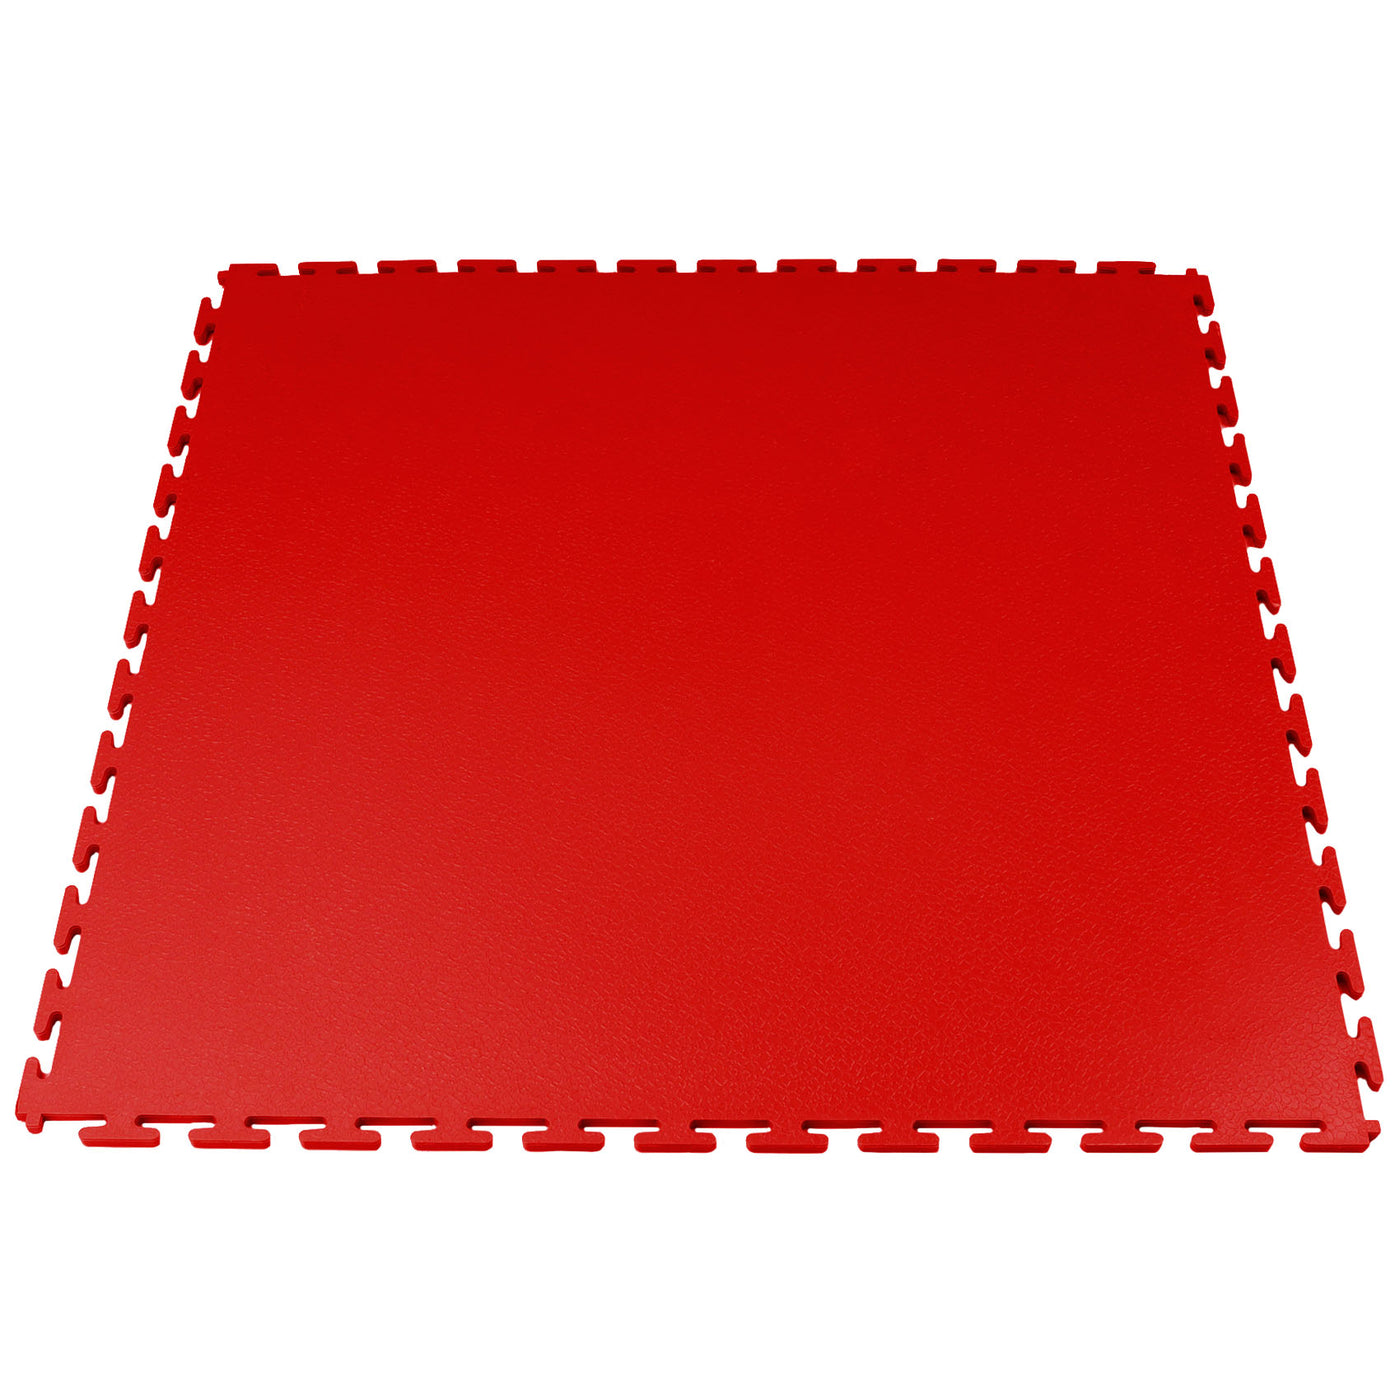 red garage floor tile smooth